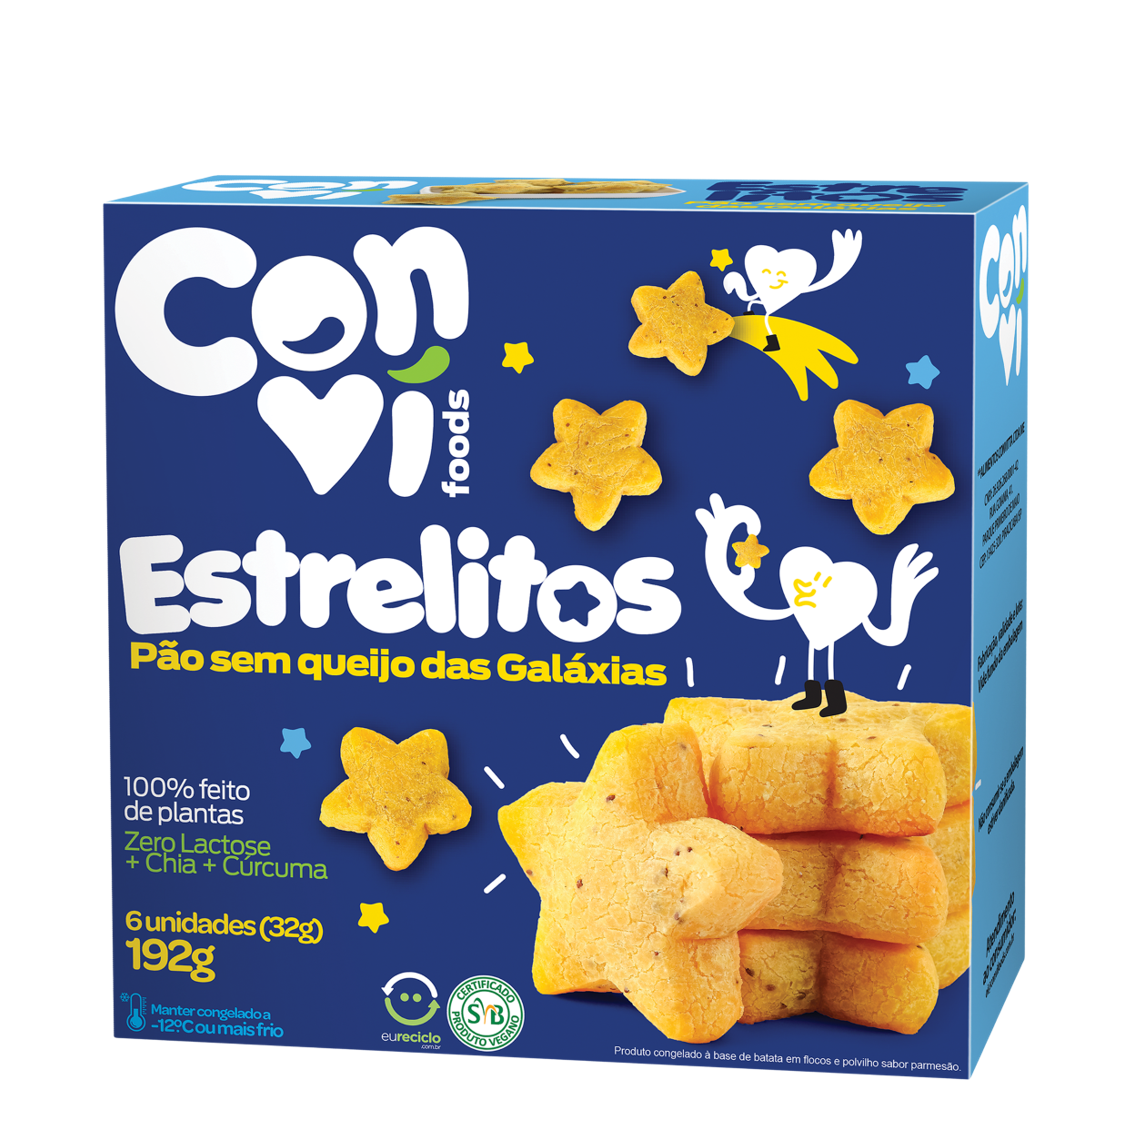 Estrelitos Pão s/ Queijo (192g) – Conví Foods